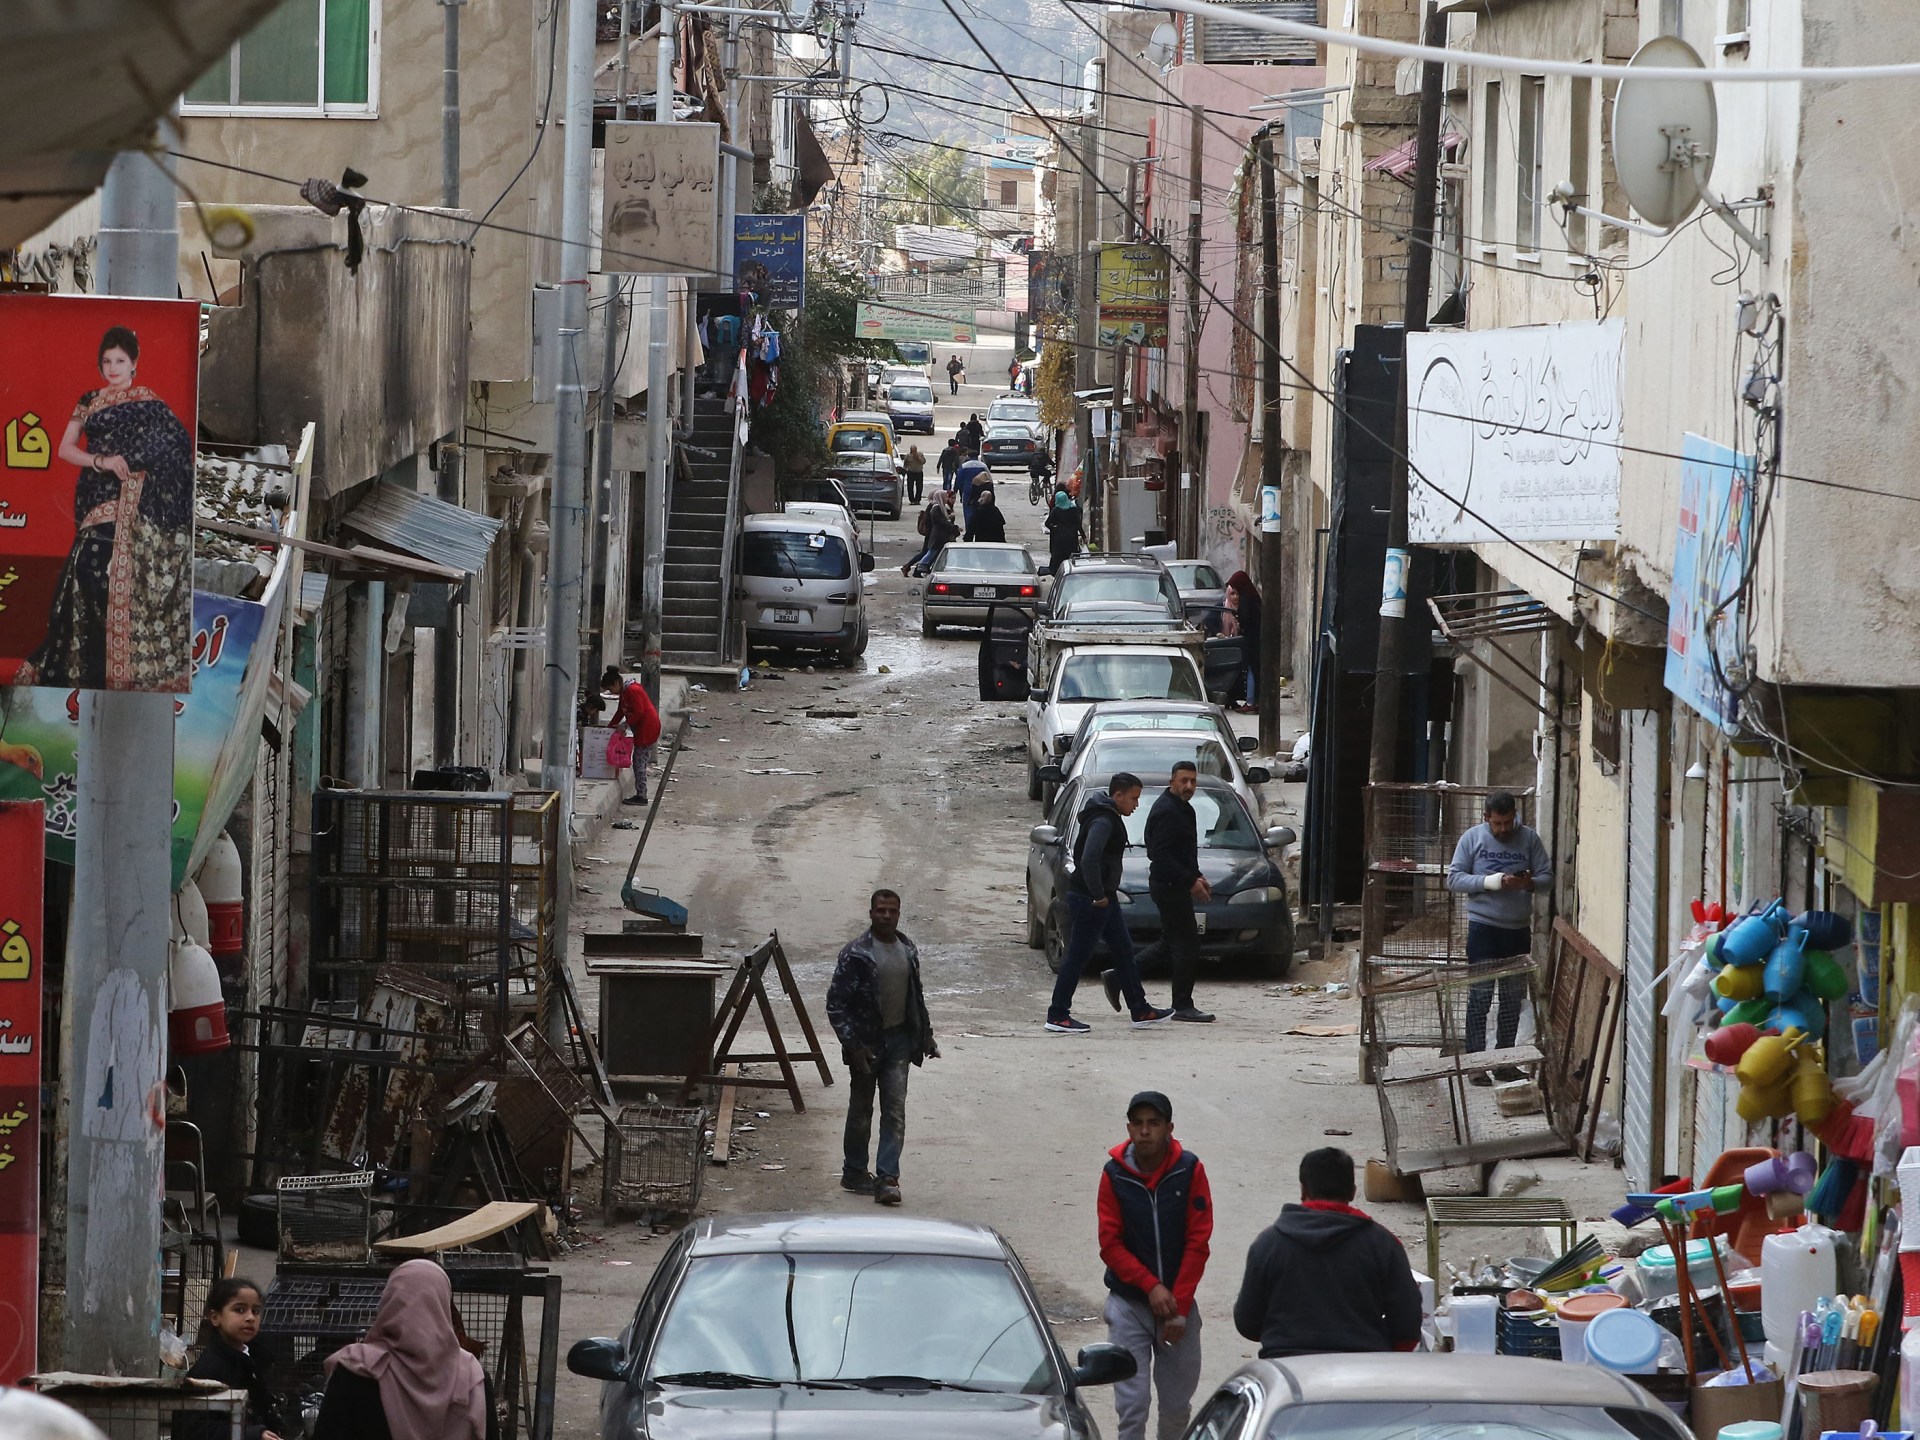 ما تأثير وقف الدعم عن “الأونروا” على لاجئي فلسطين بالأردن؟ | سياسة – البوكس نيوز